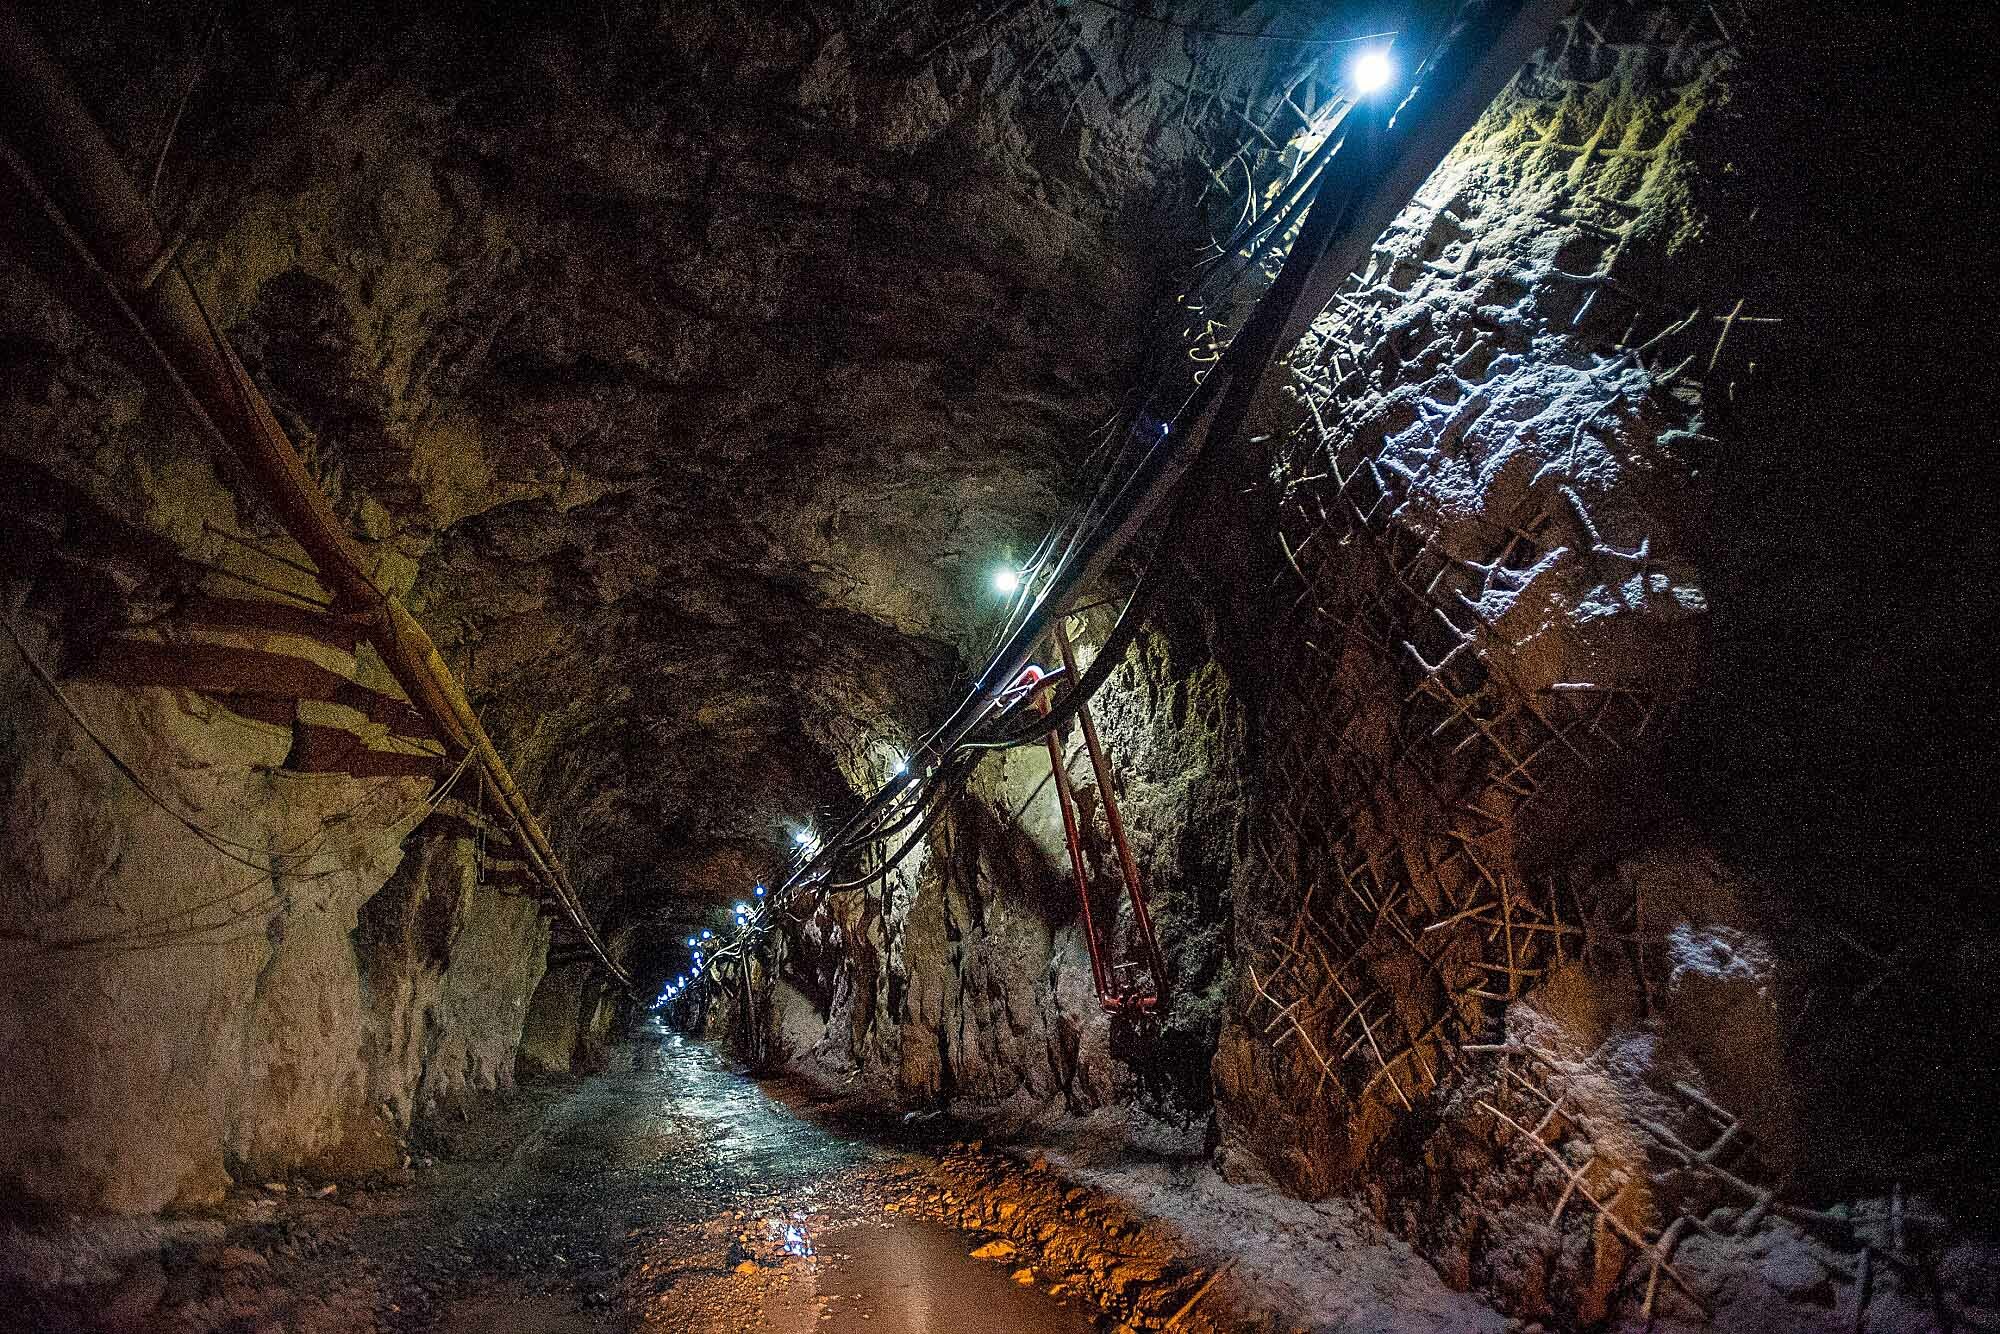 Связь в руднике: «Ростелеком» протестировал беспроводную сеть на Учалинском горно-обогатительном комбинате